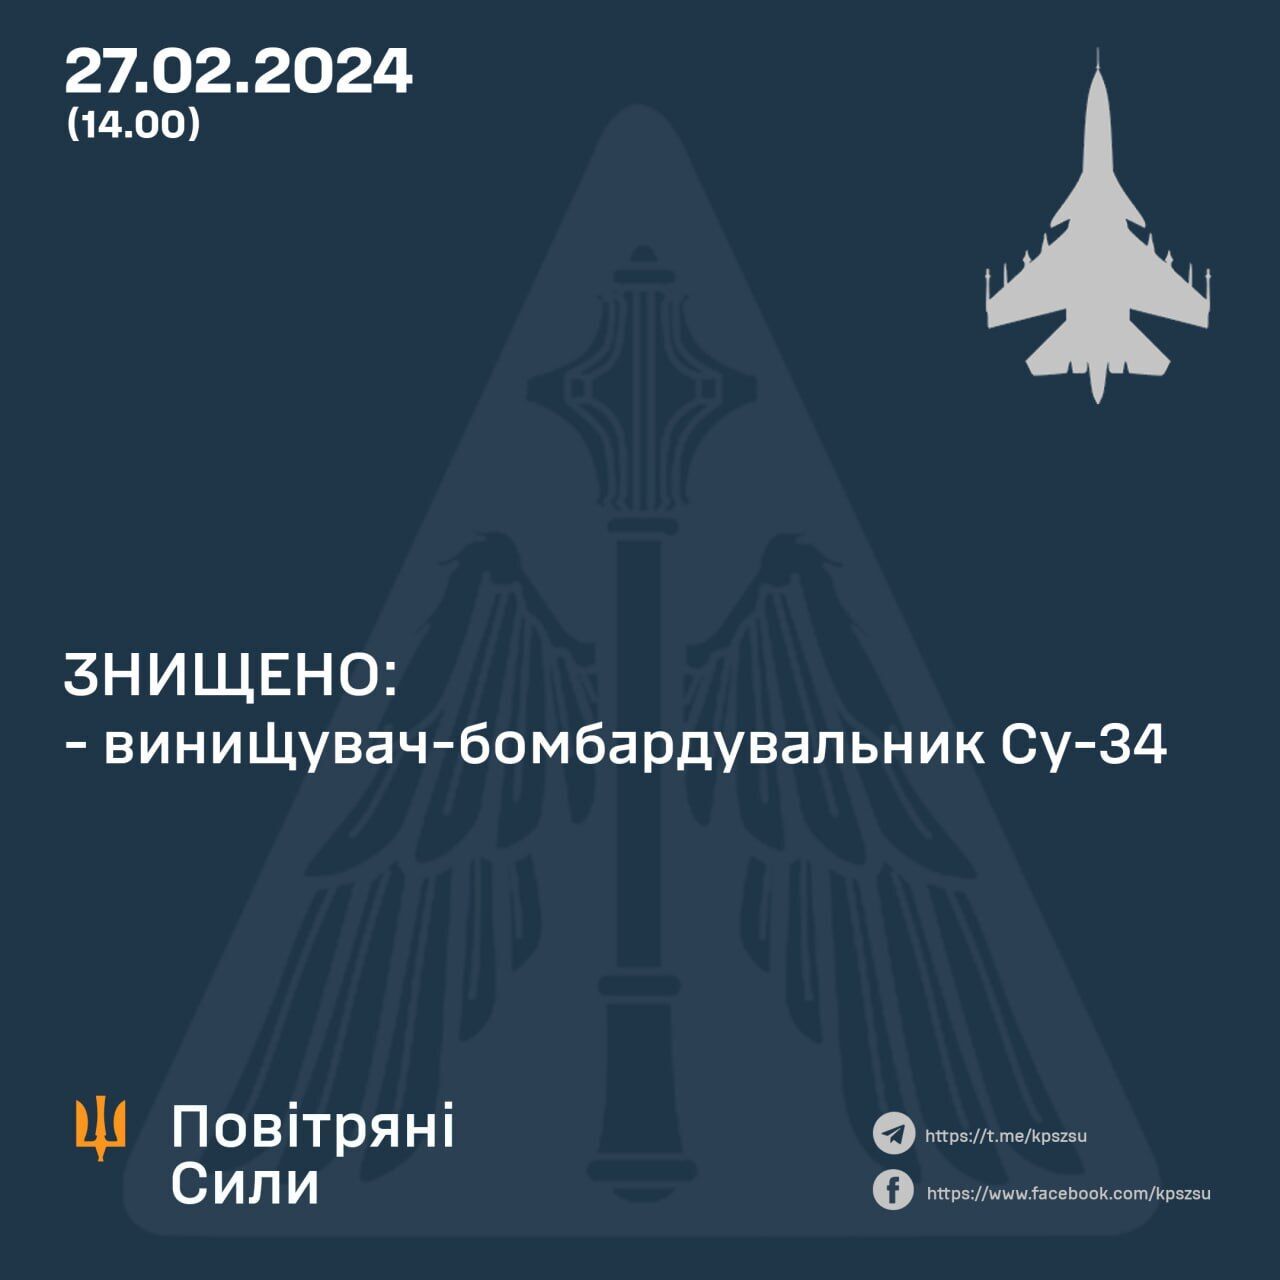 Ukraińskie siły obronne niszczą drugi rosyjski Su-34 w ciągu jednego dnia